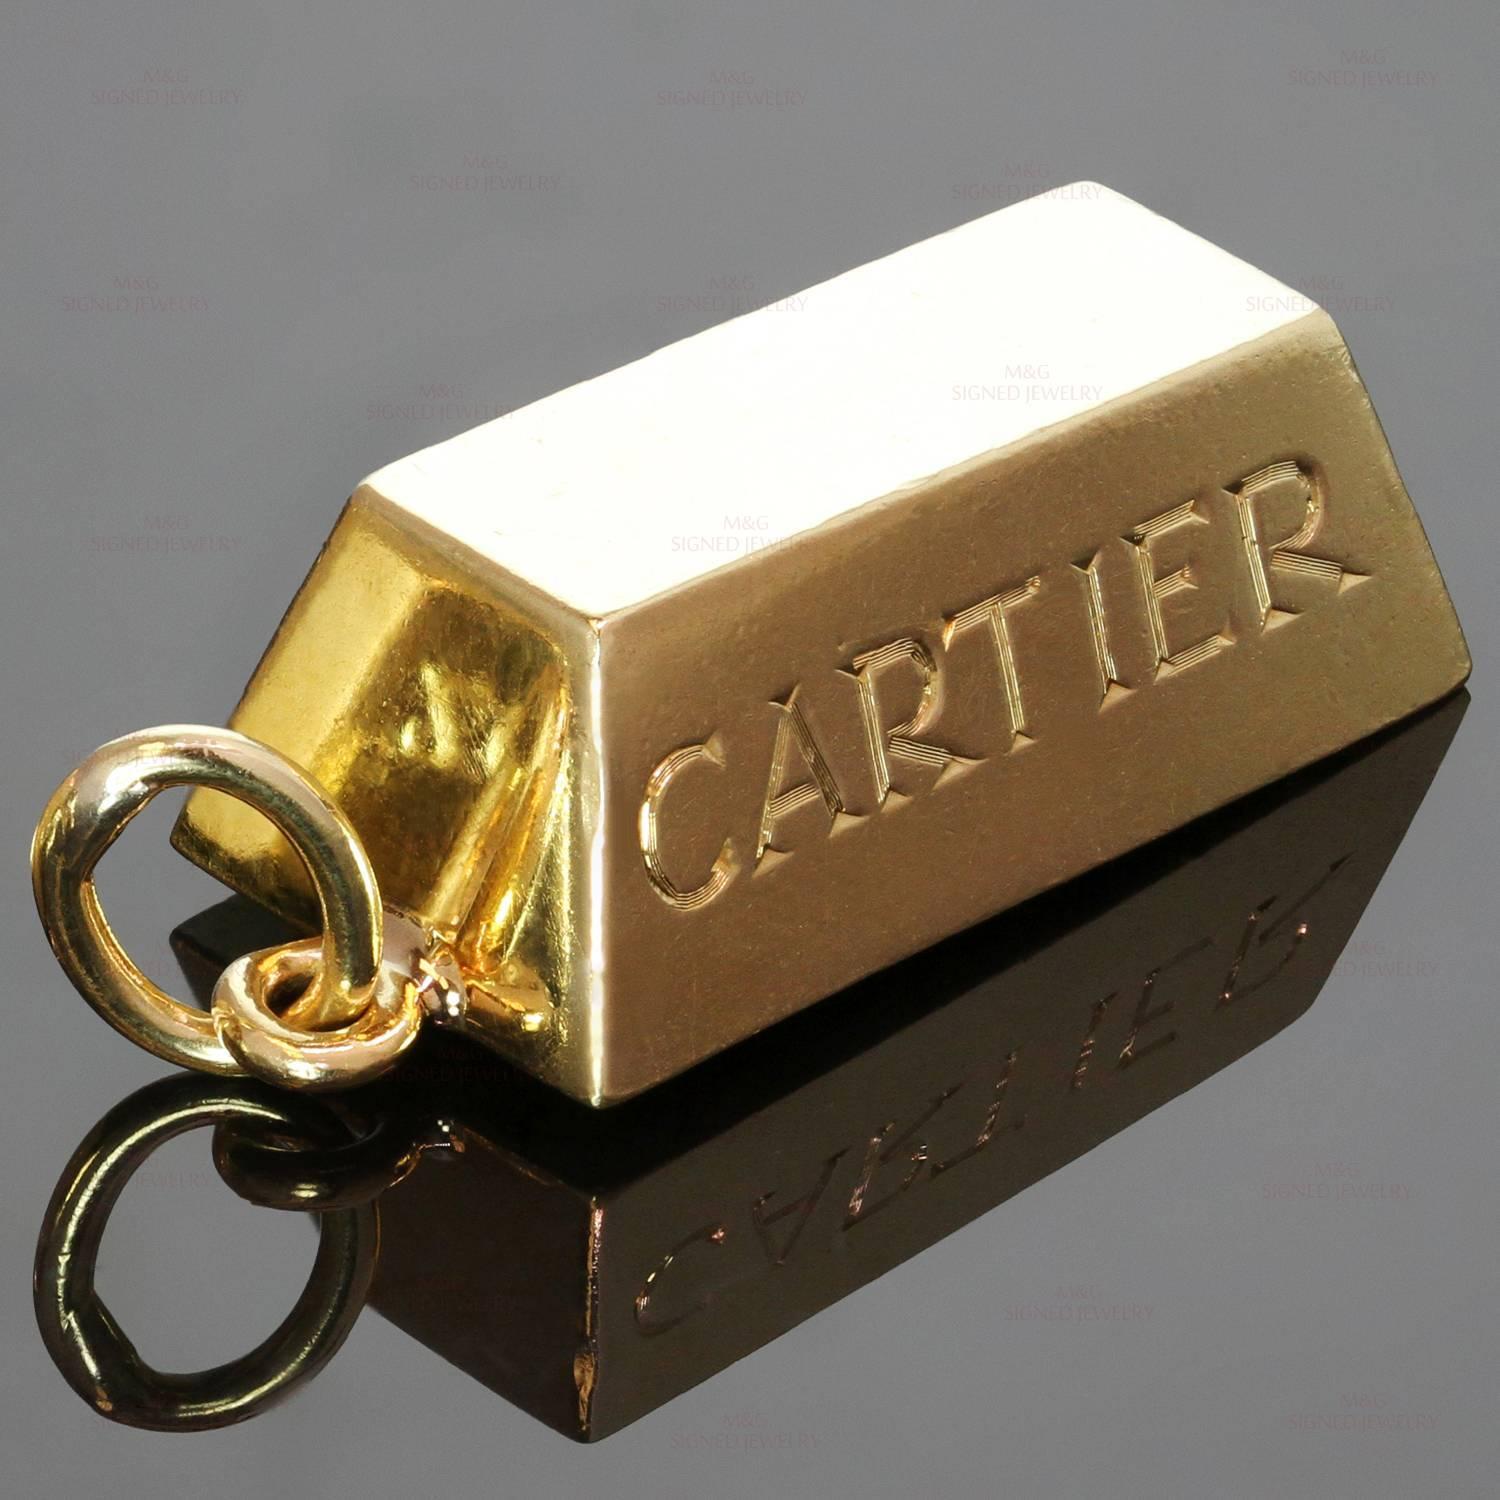 cartier 1 oz gold bar